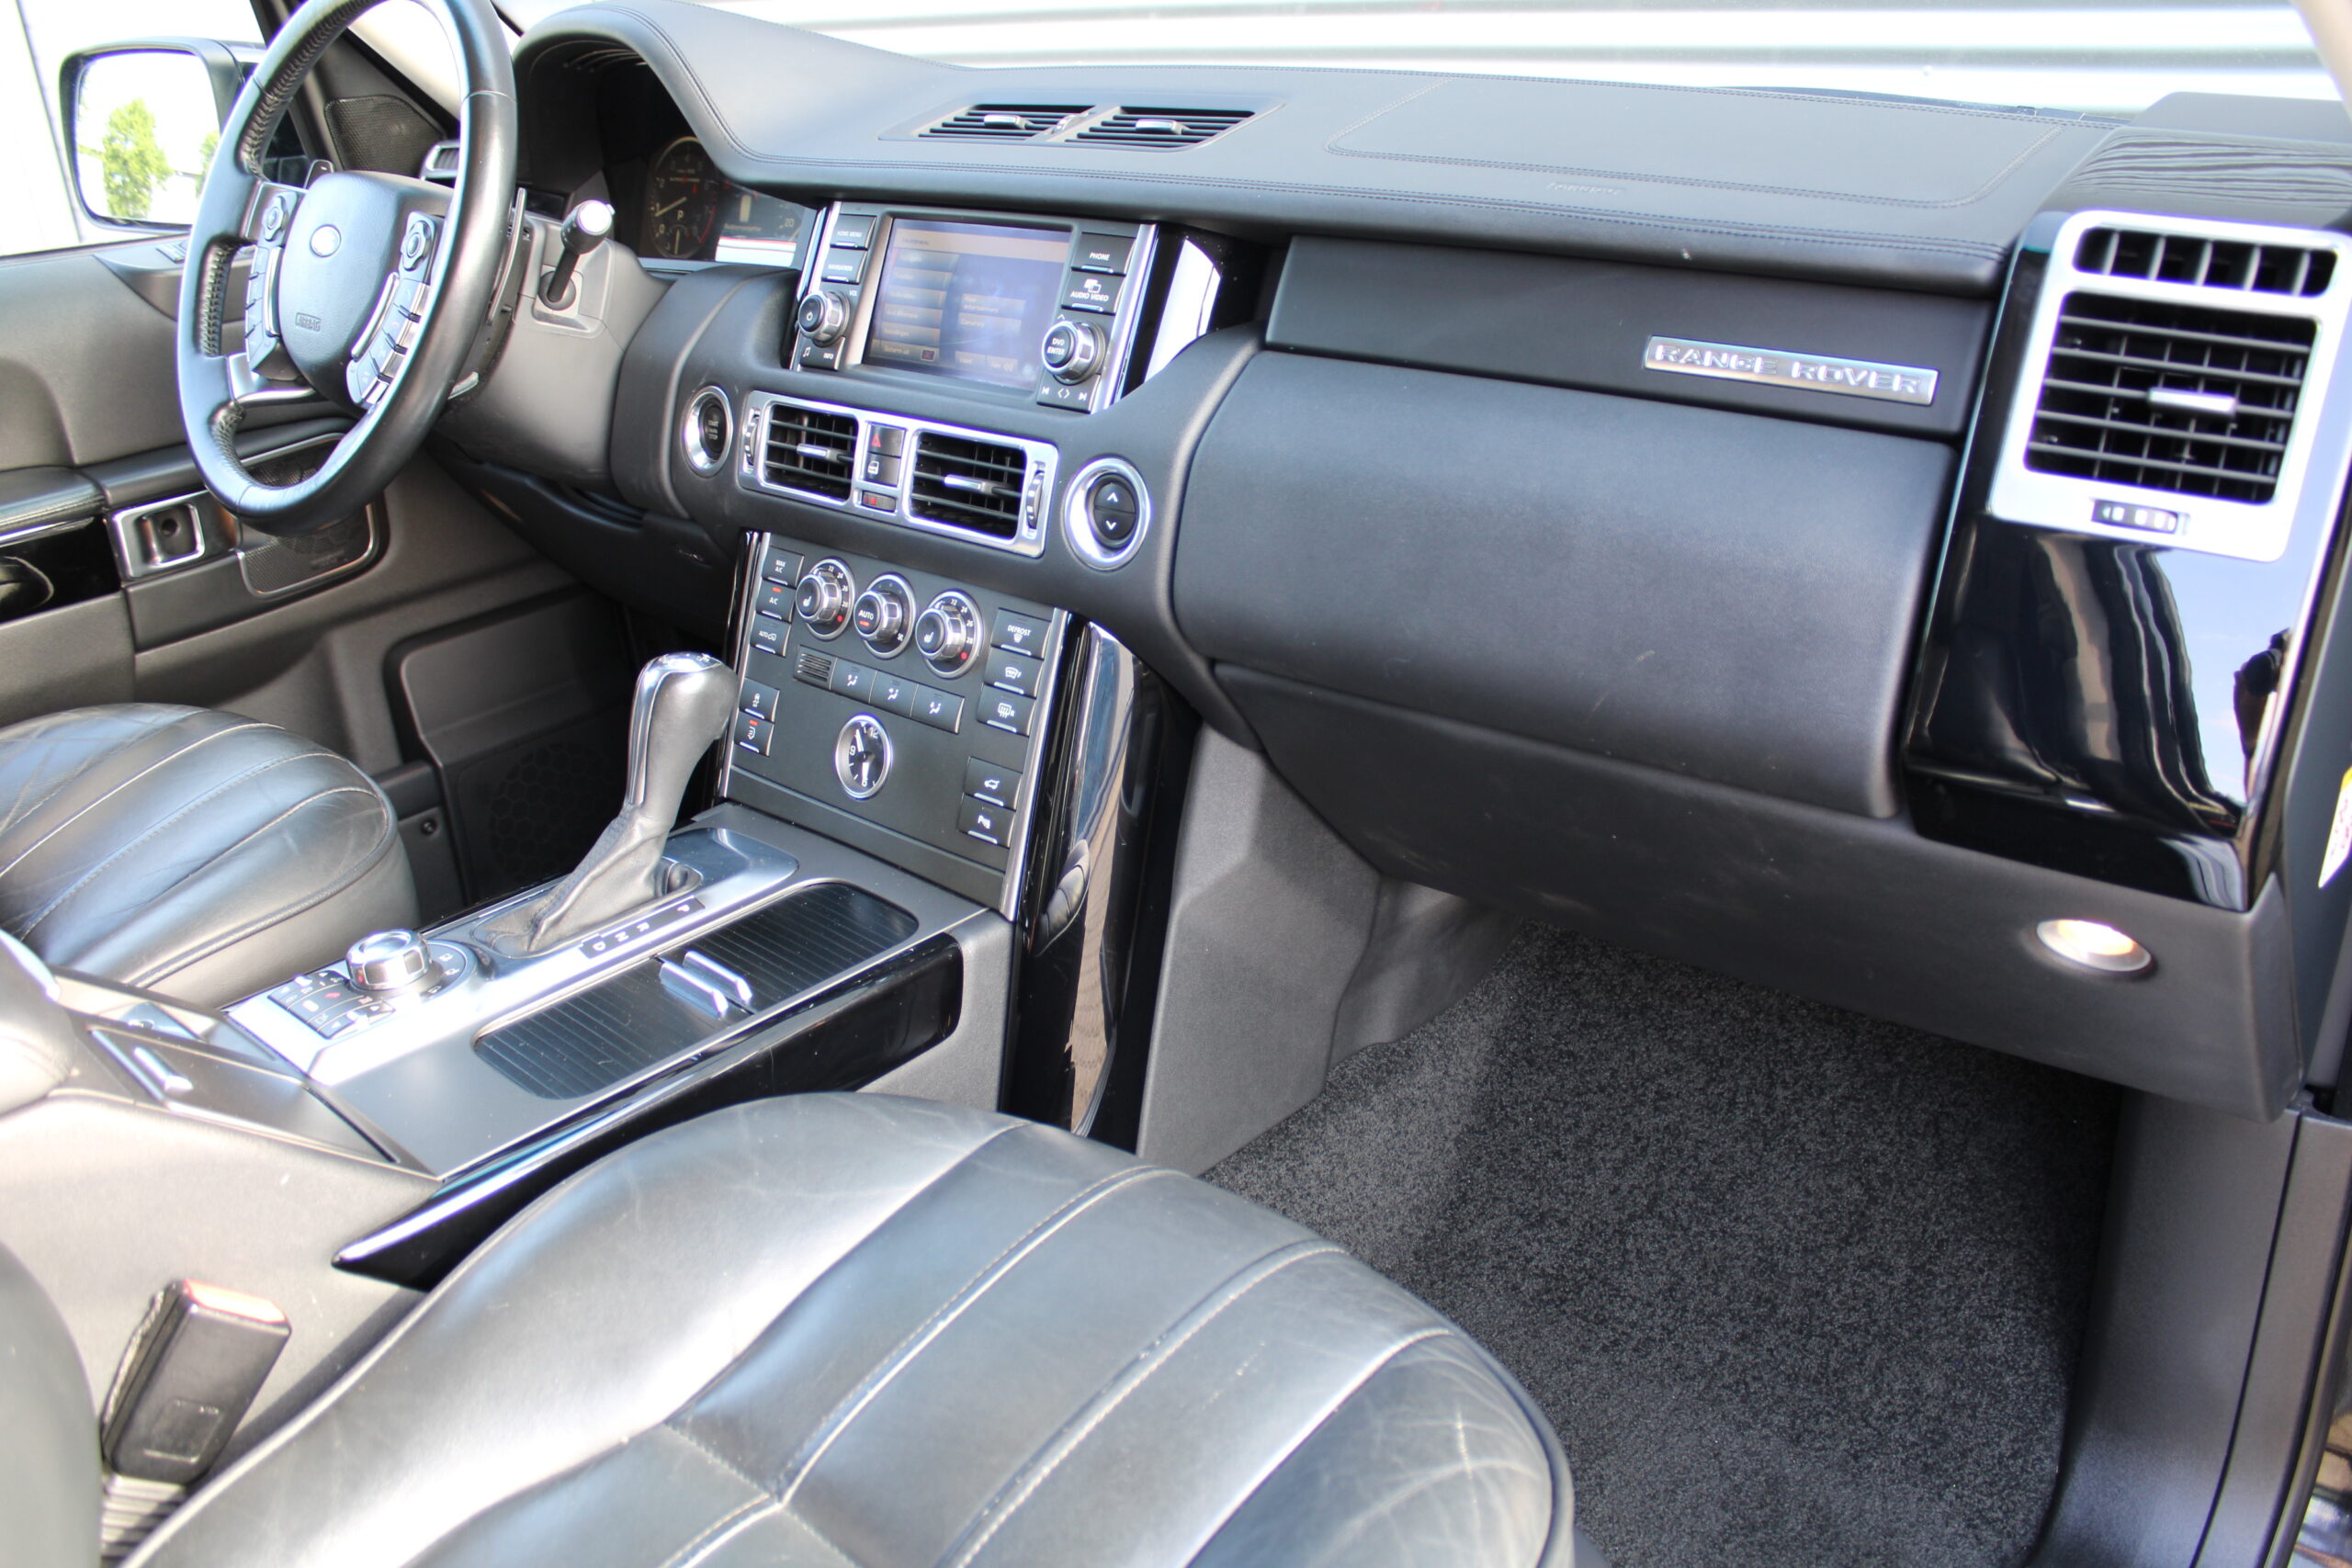 Range Rover 5.0 V8 Supercharged/ Adaptive cruise